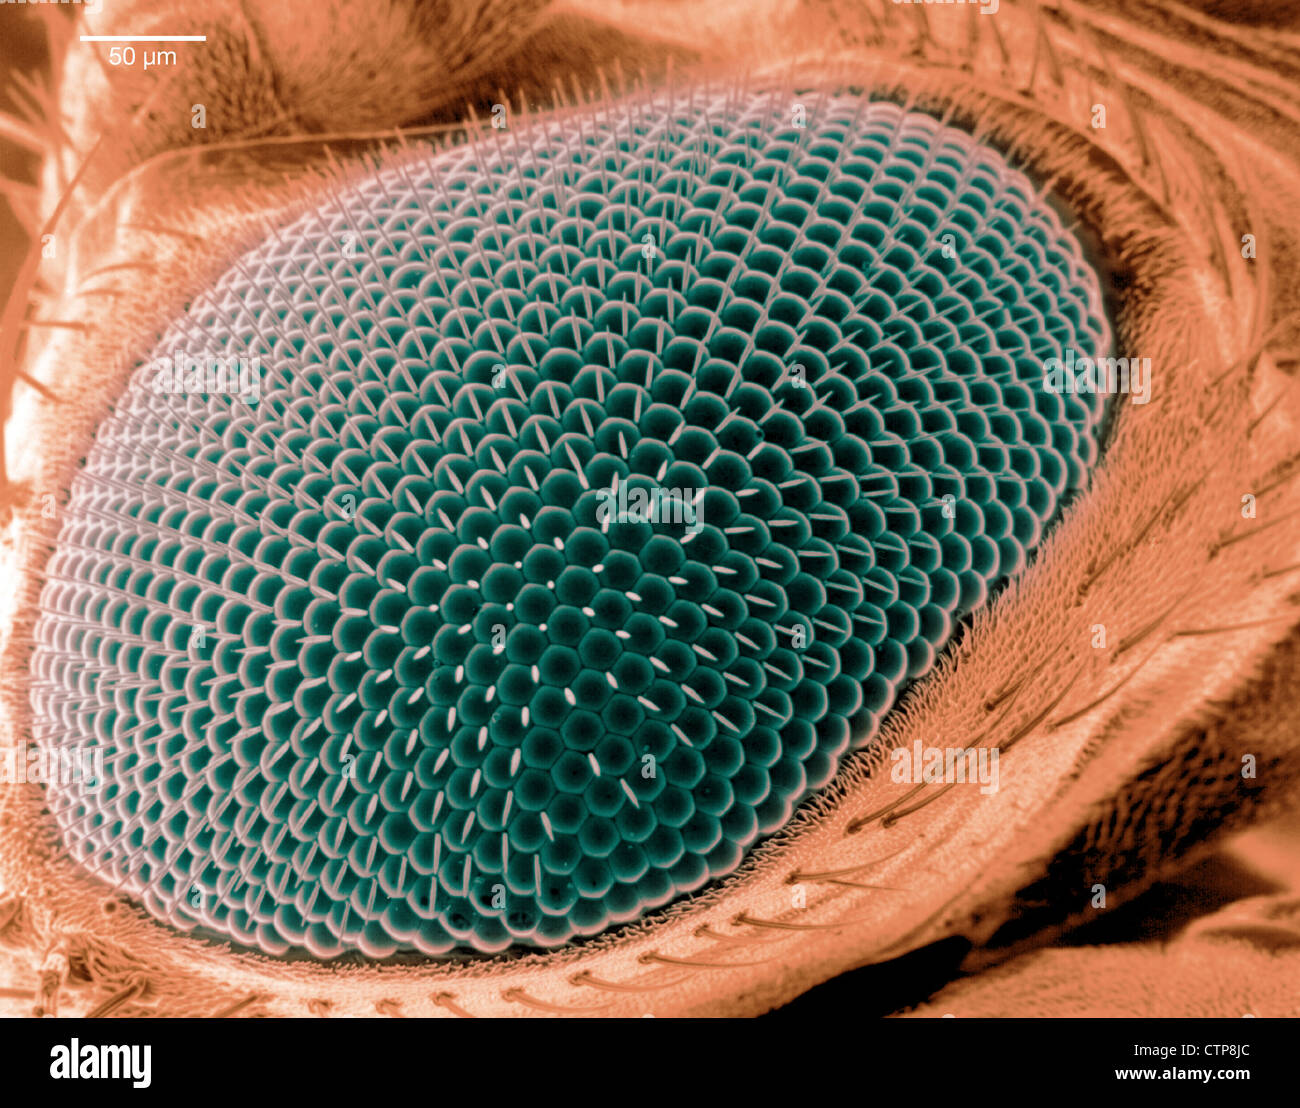 Imagen por microscopio electrónico de barrido de un ojo en una mosca de la fruta. Foto de stock